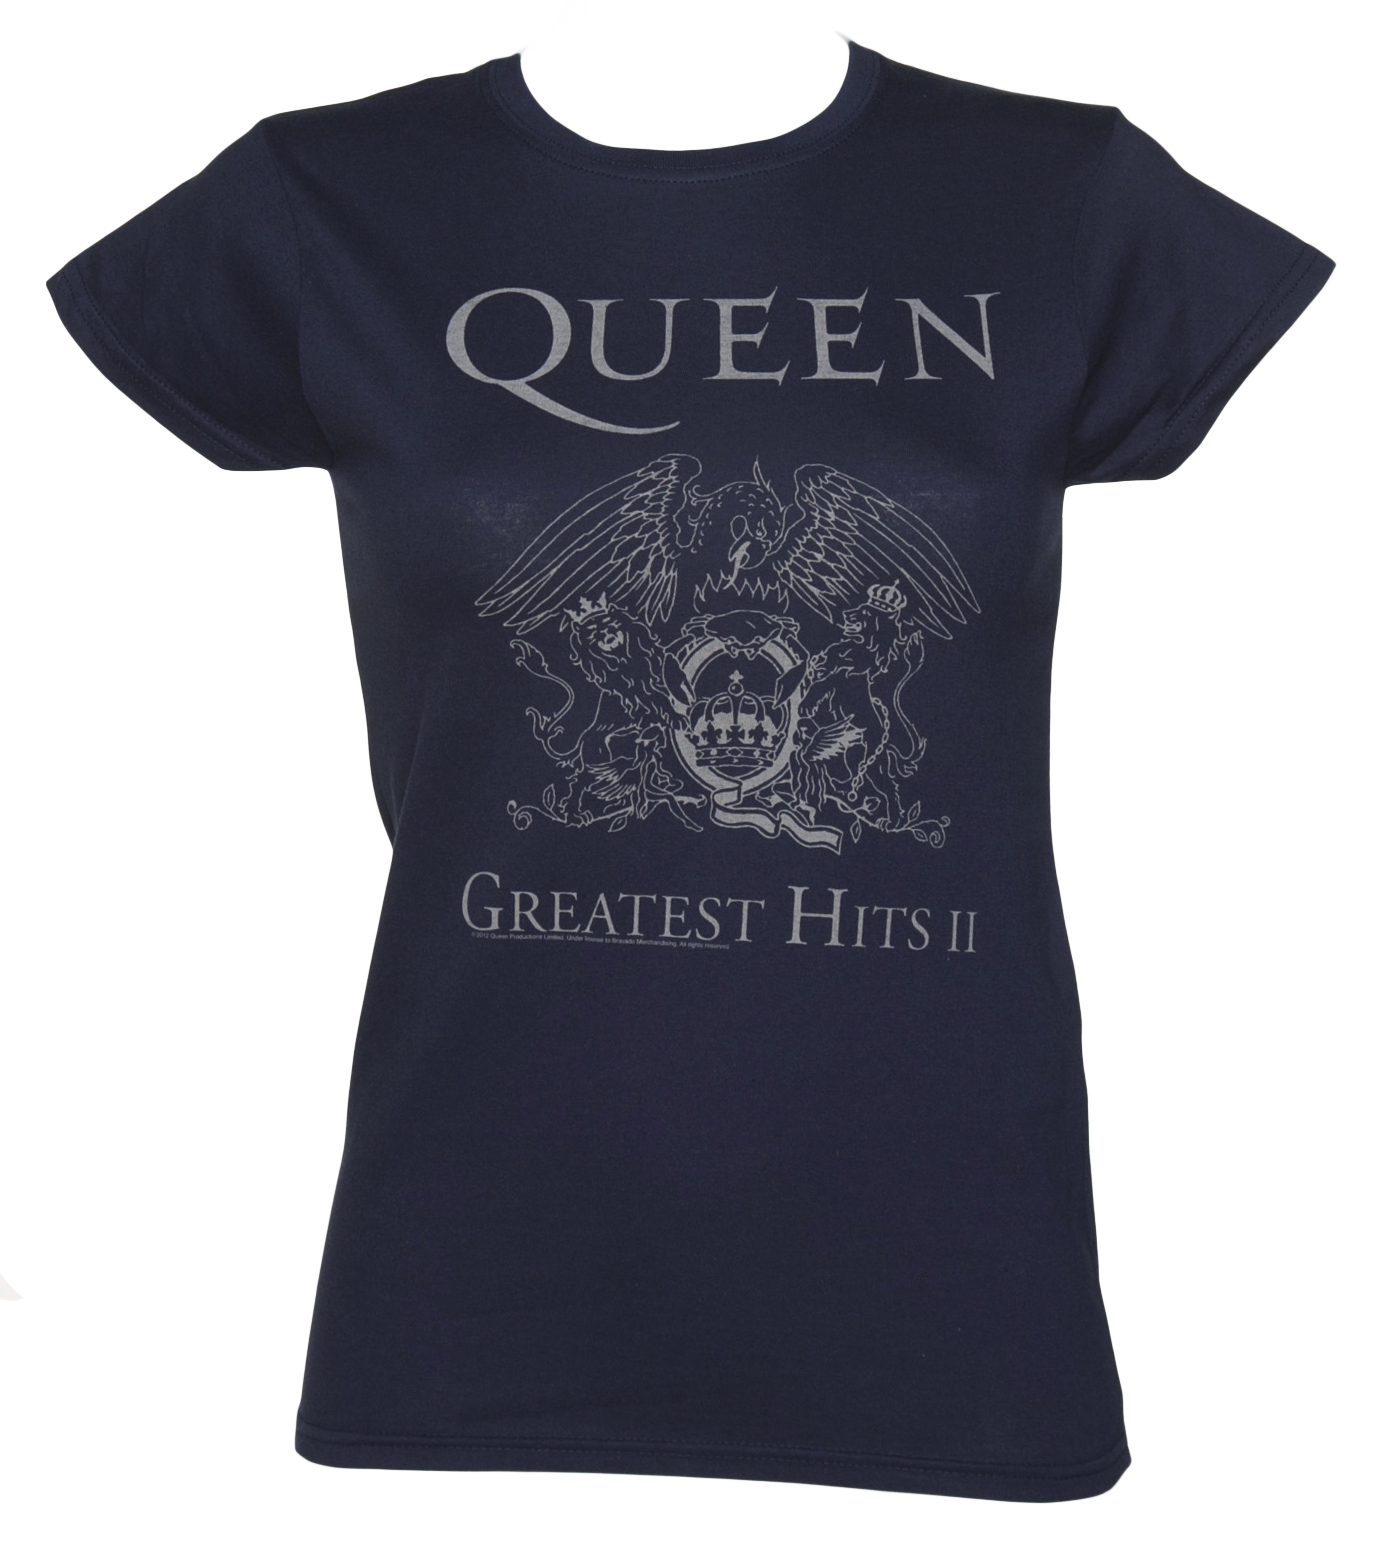 Ladies Queen Greatest Hits II T-Shirt